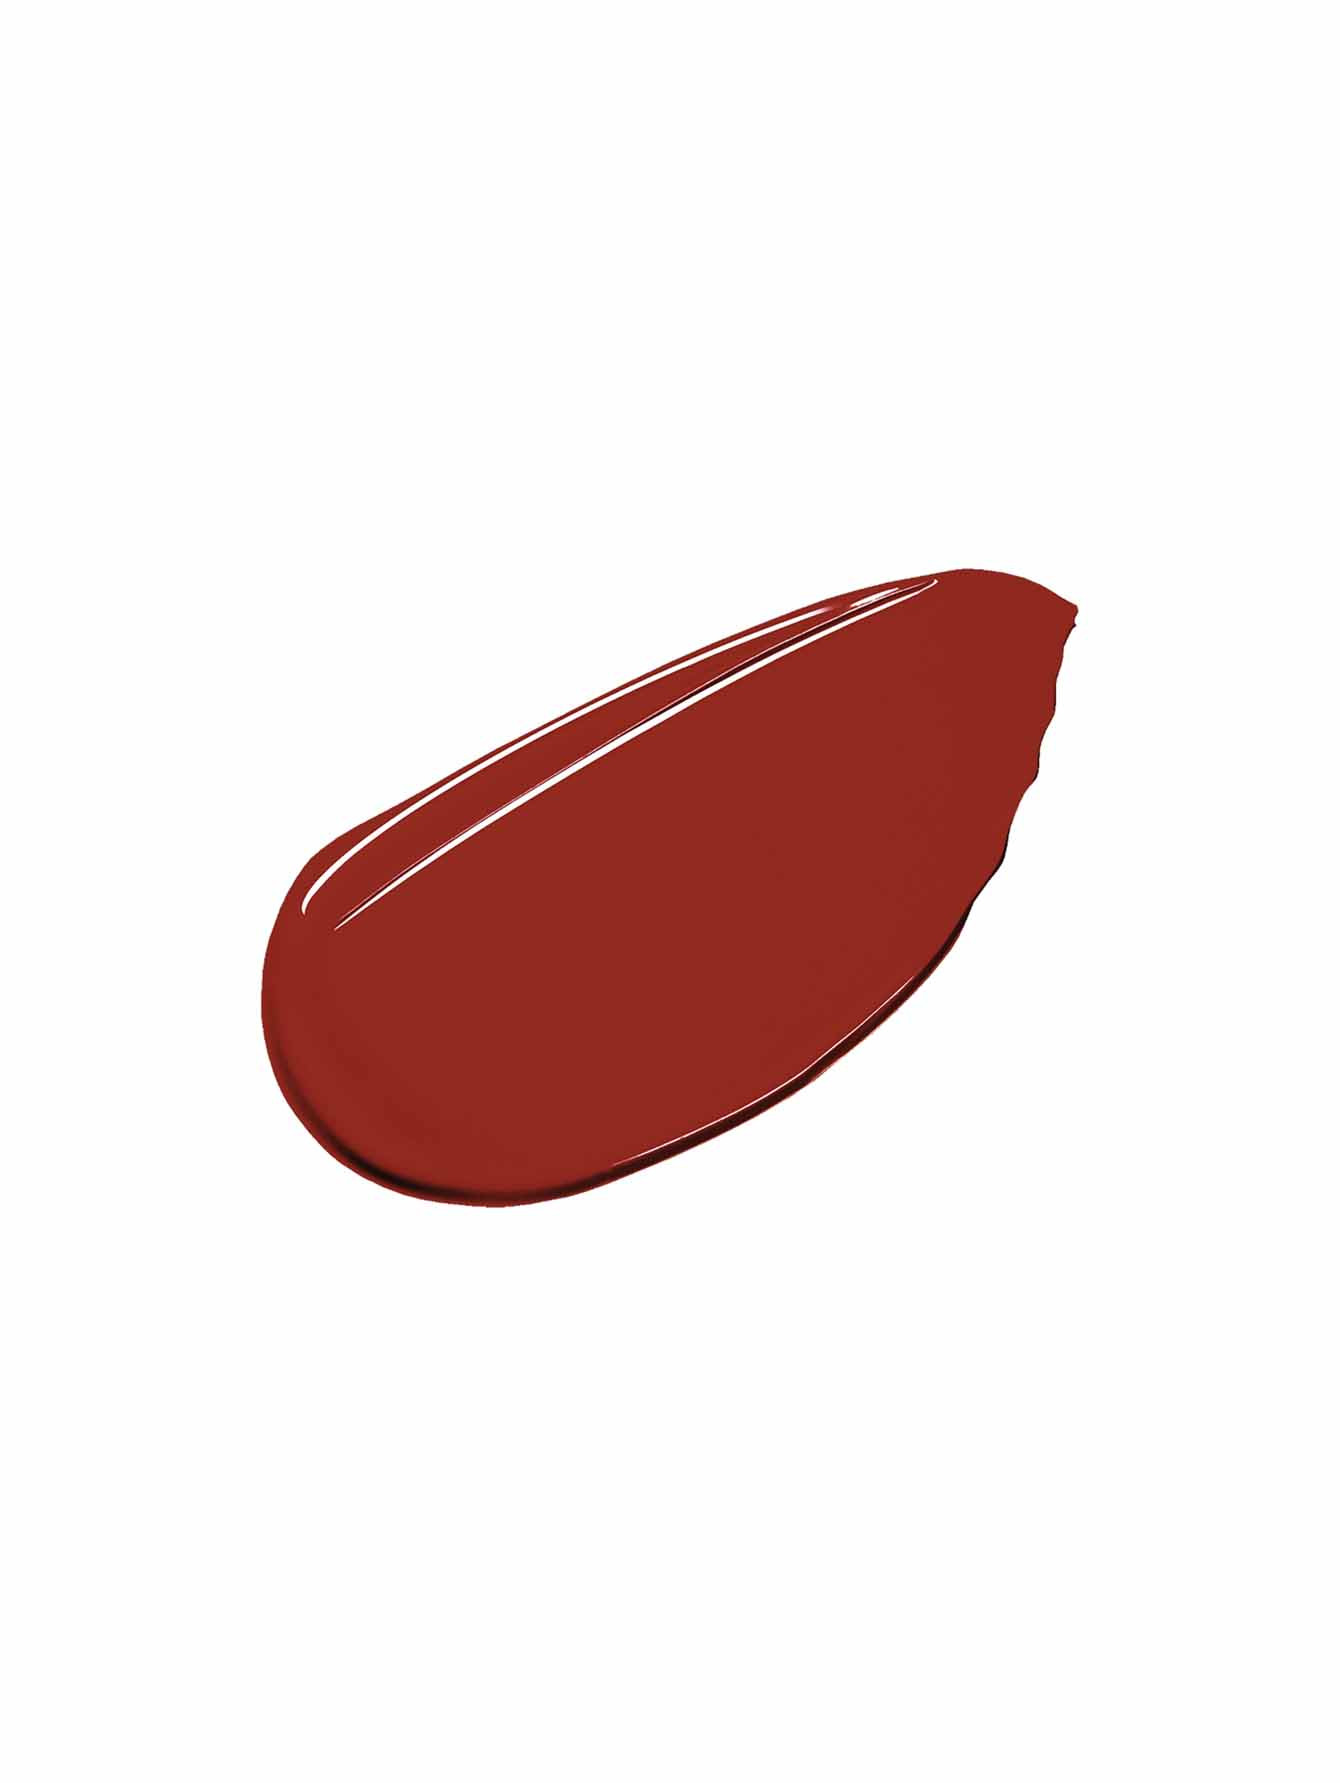 Рефил губной помады Contouring Lipstick, СL03 Warm Red, 2 г - Обтравка1